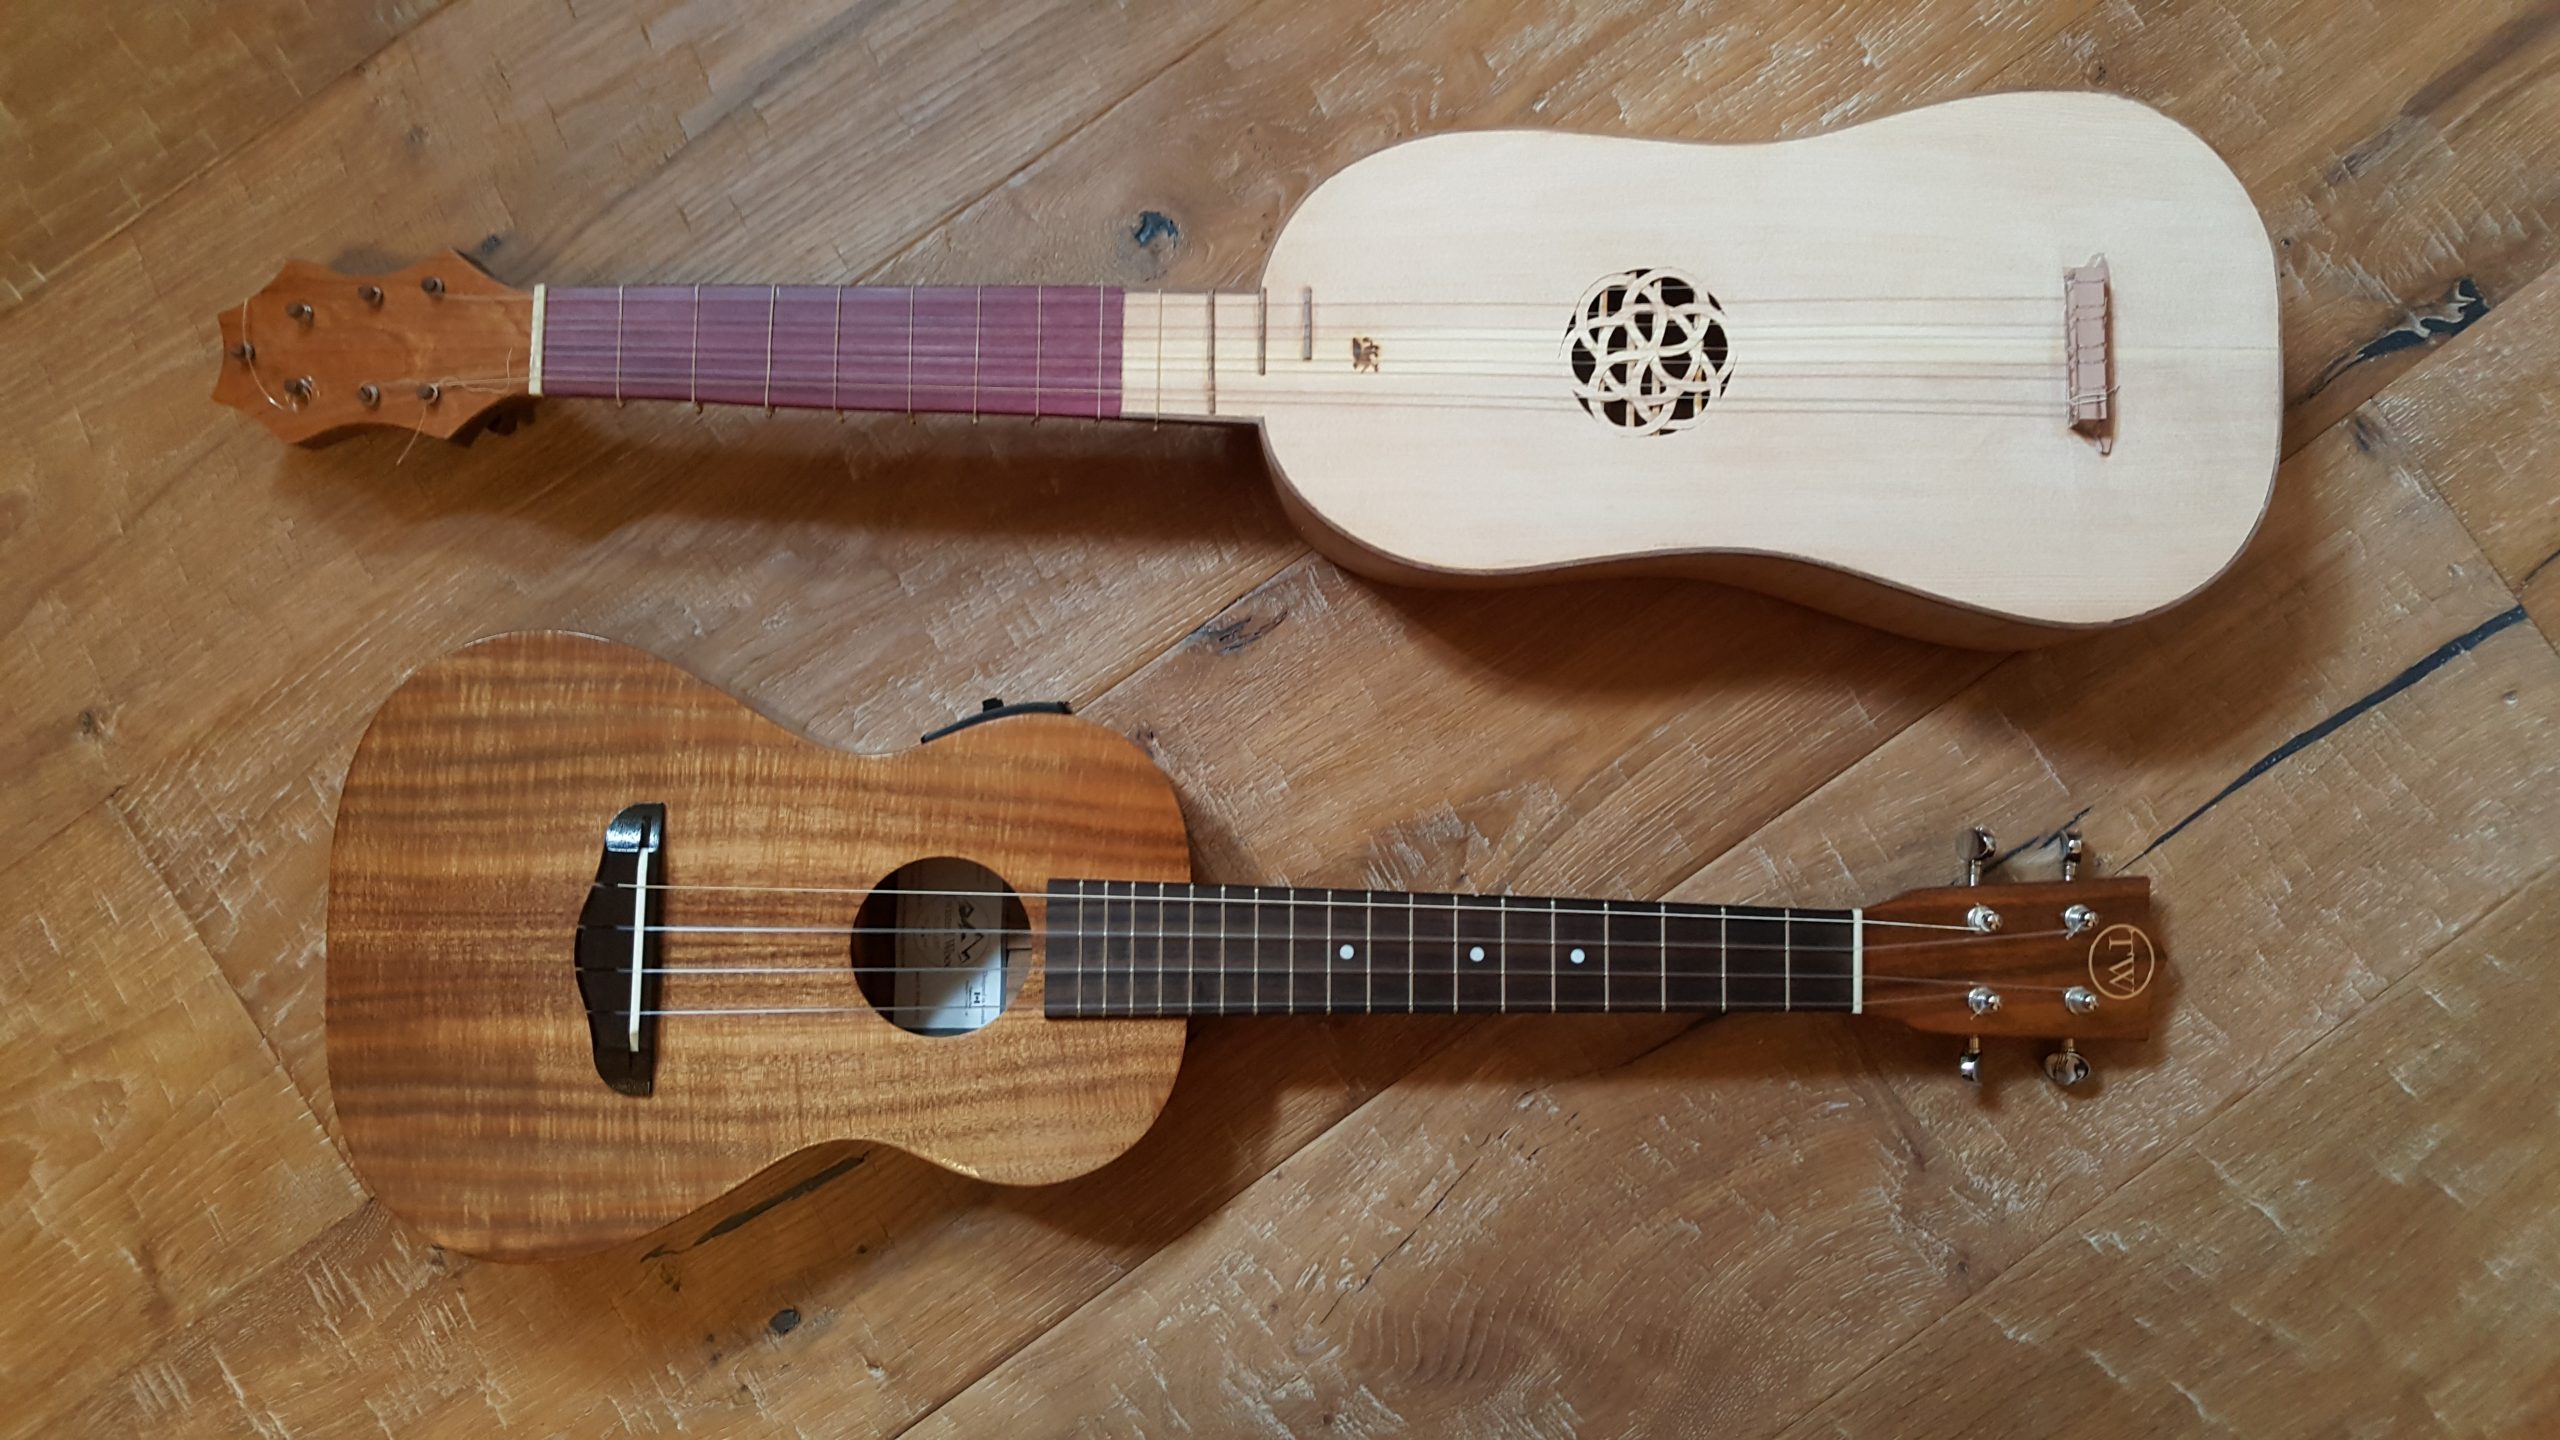 Renaissance Guitar and Ukulele